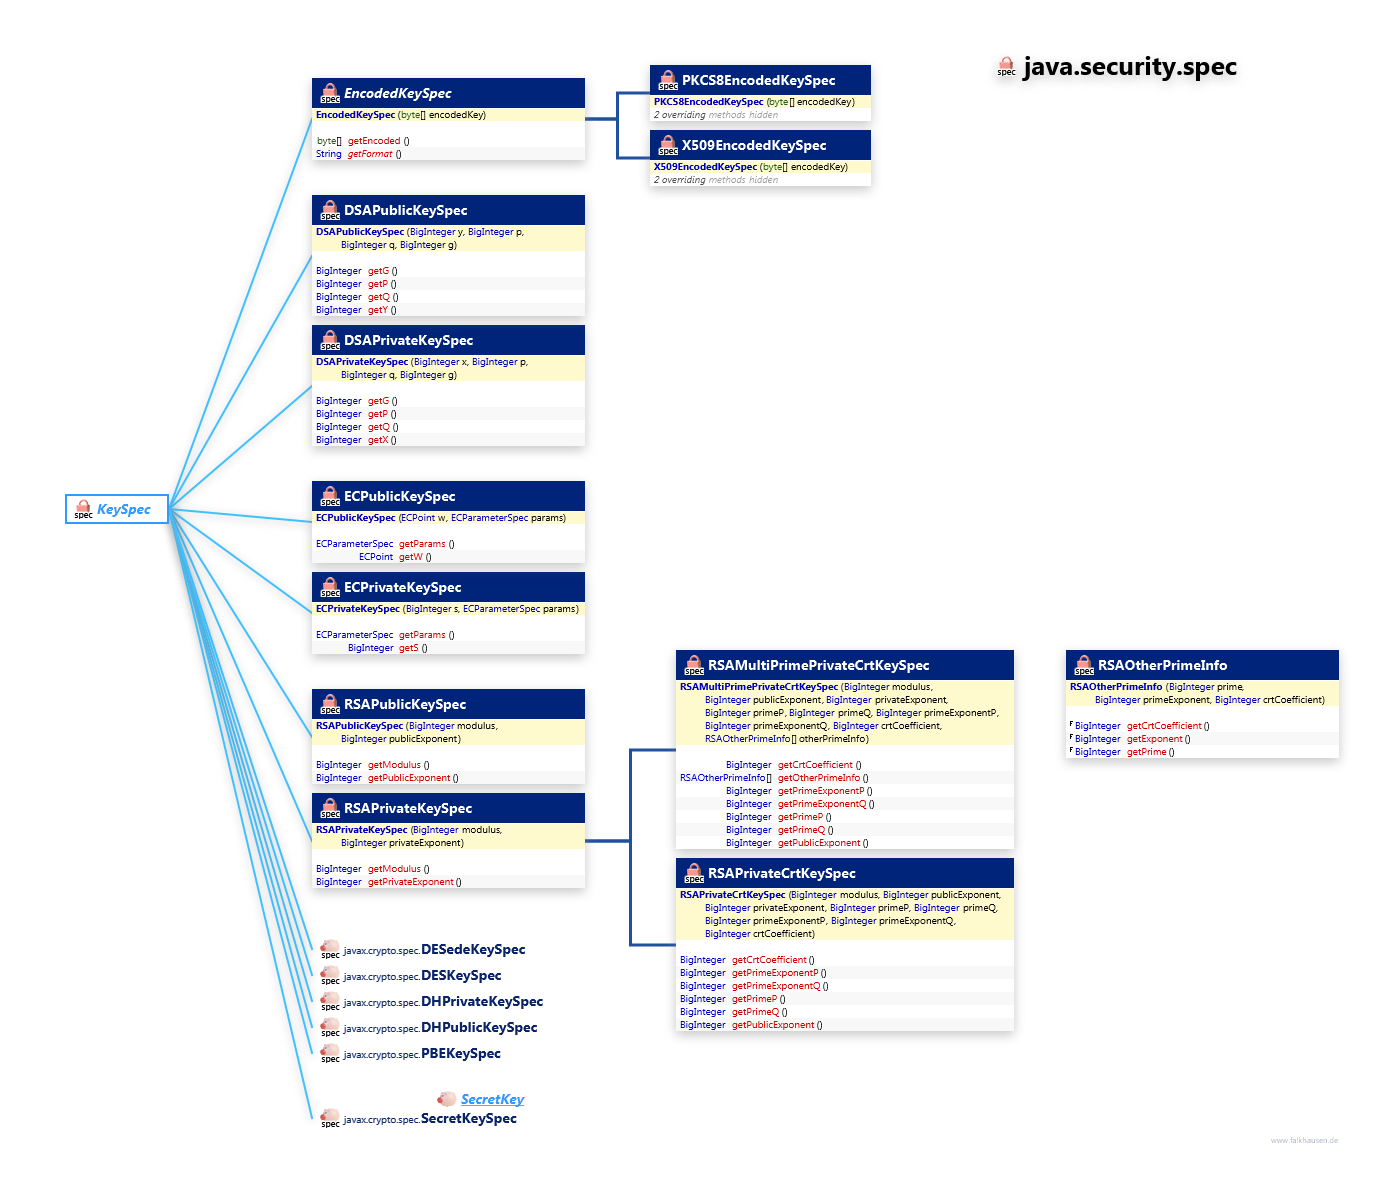 java.security.spec KeySpec class diagram and api documentation for Java 7